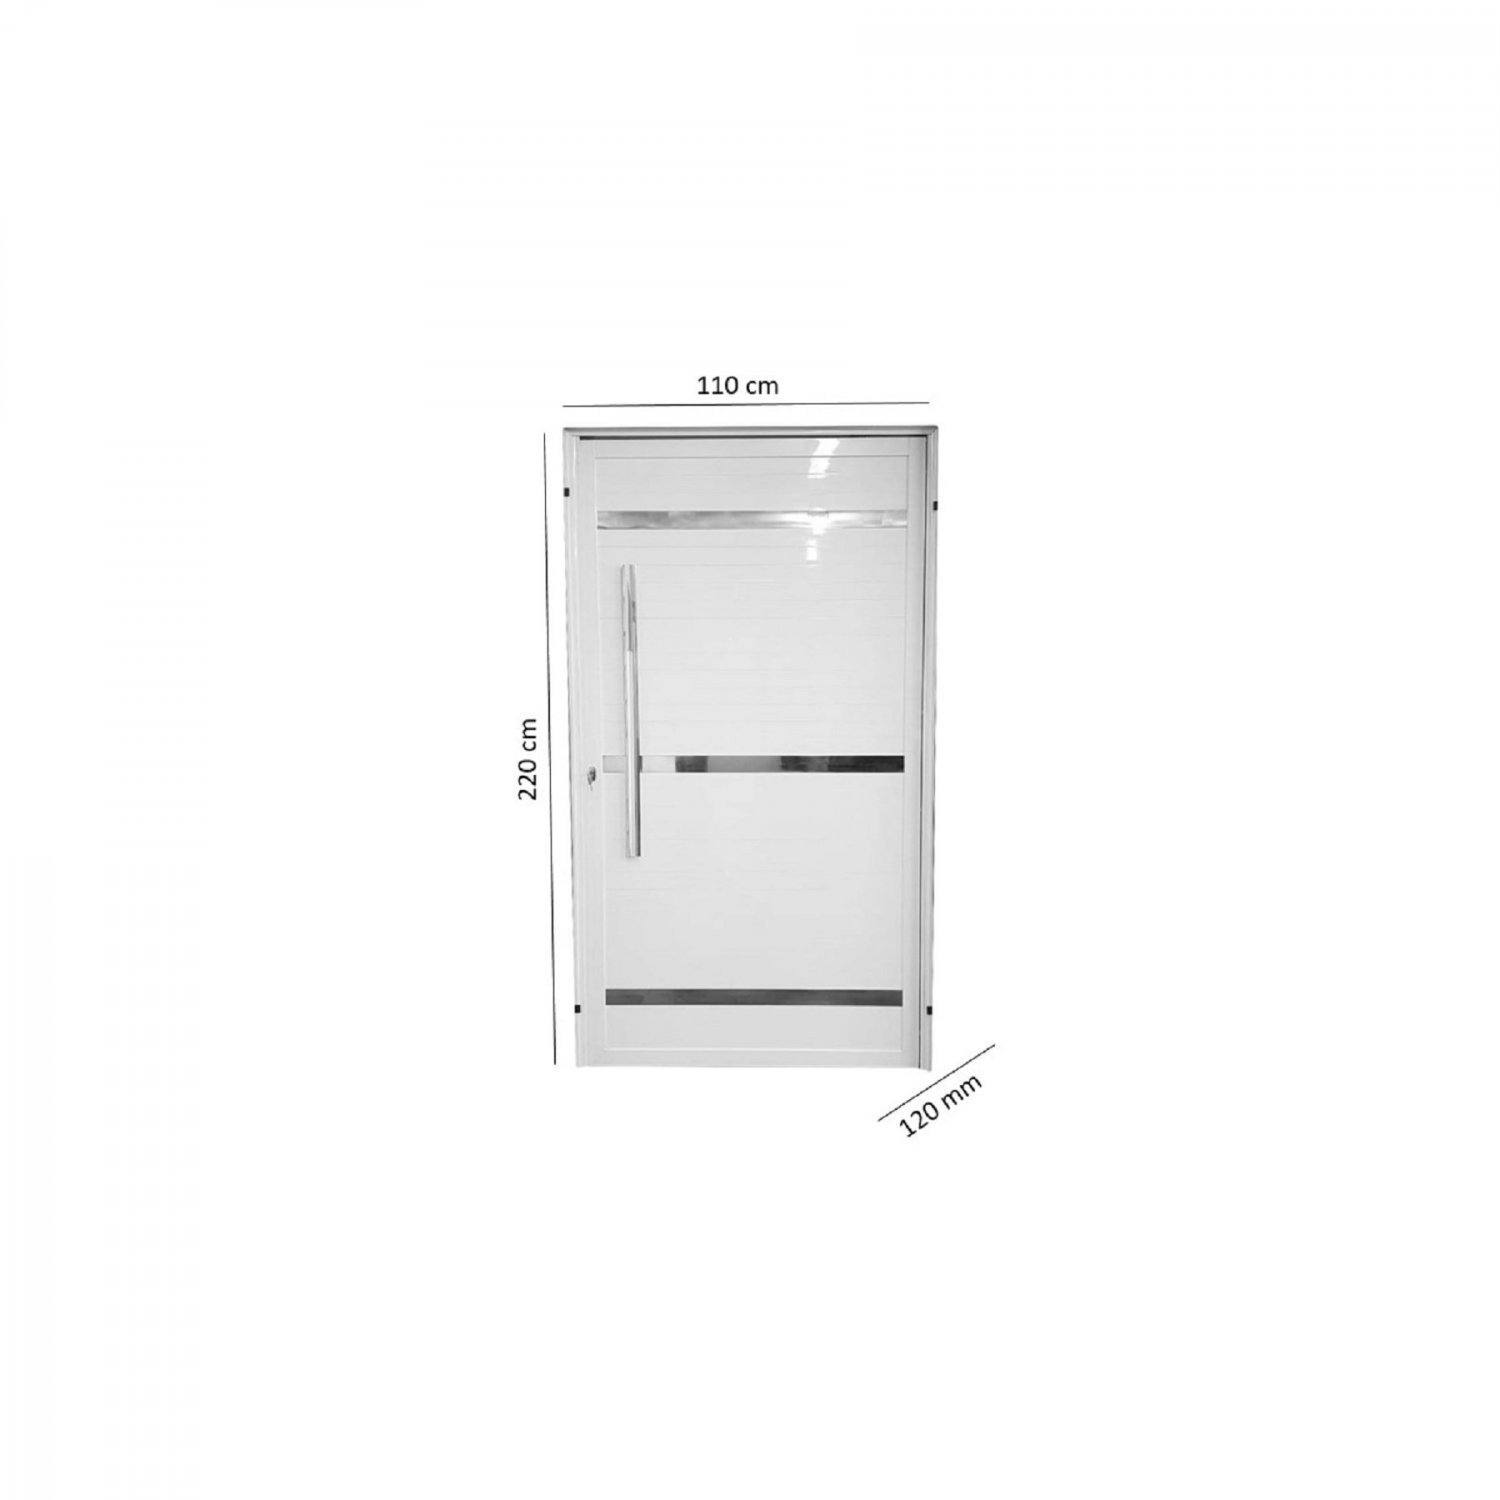 Porta de Aluminio Pivotante Branca com Frisos 220x110 MGM - 3